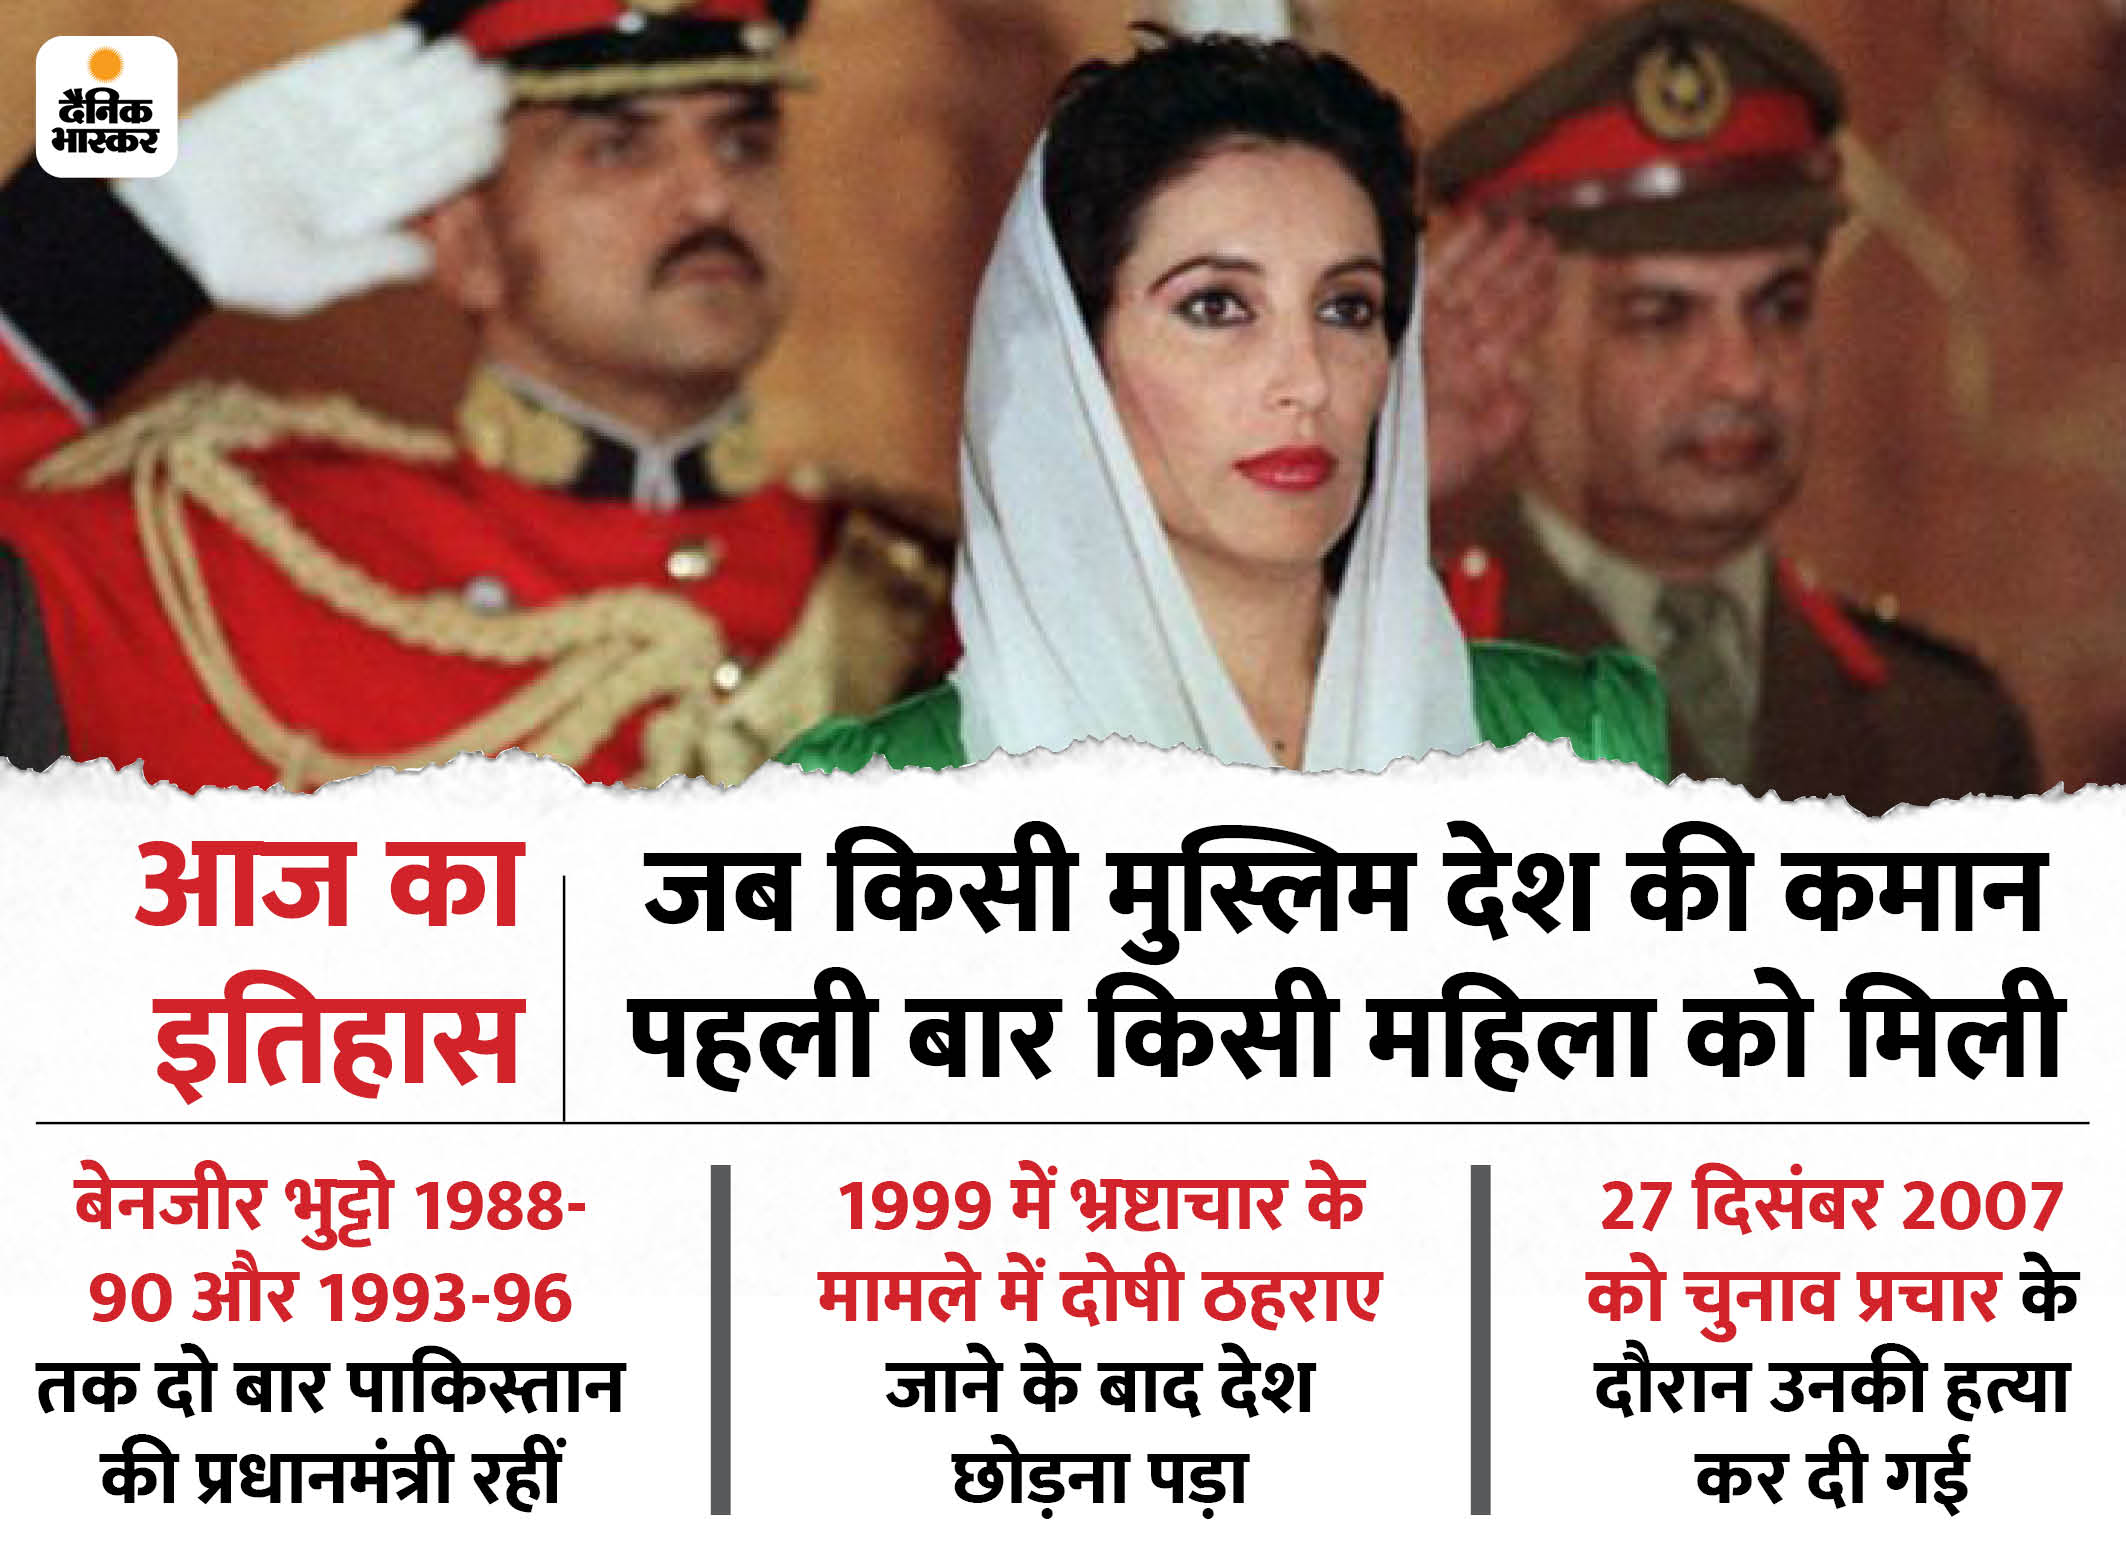 इतिहास में आज: जब दुनिया के किसी मुस्लिम देश में पहली बार चुनी गई महिला प्रधानमंत्री, सिर्फ 35 साल थी उनकी उम्र